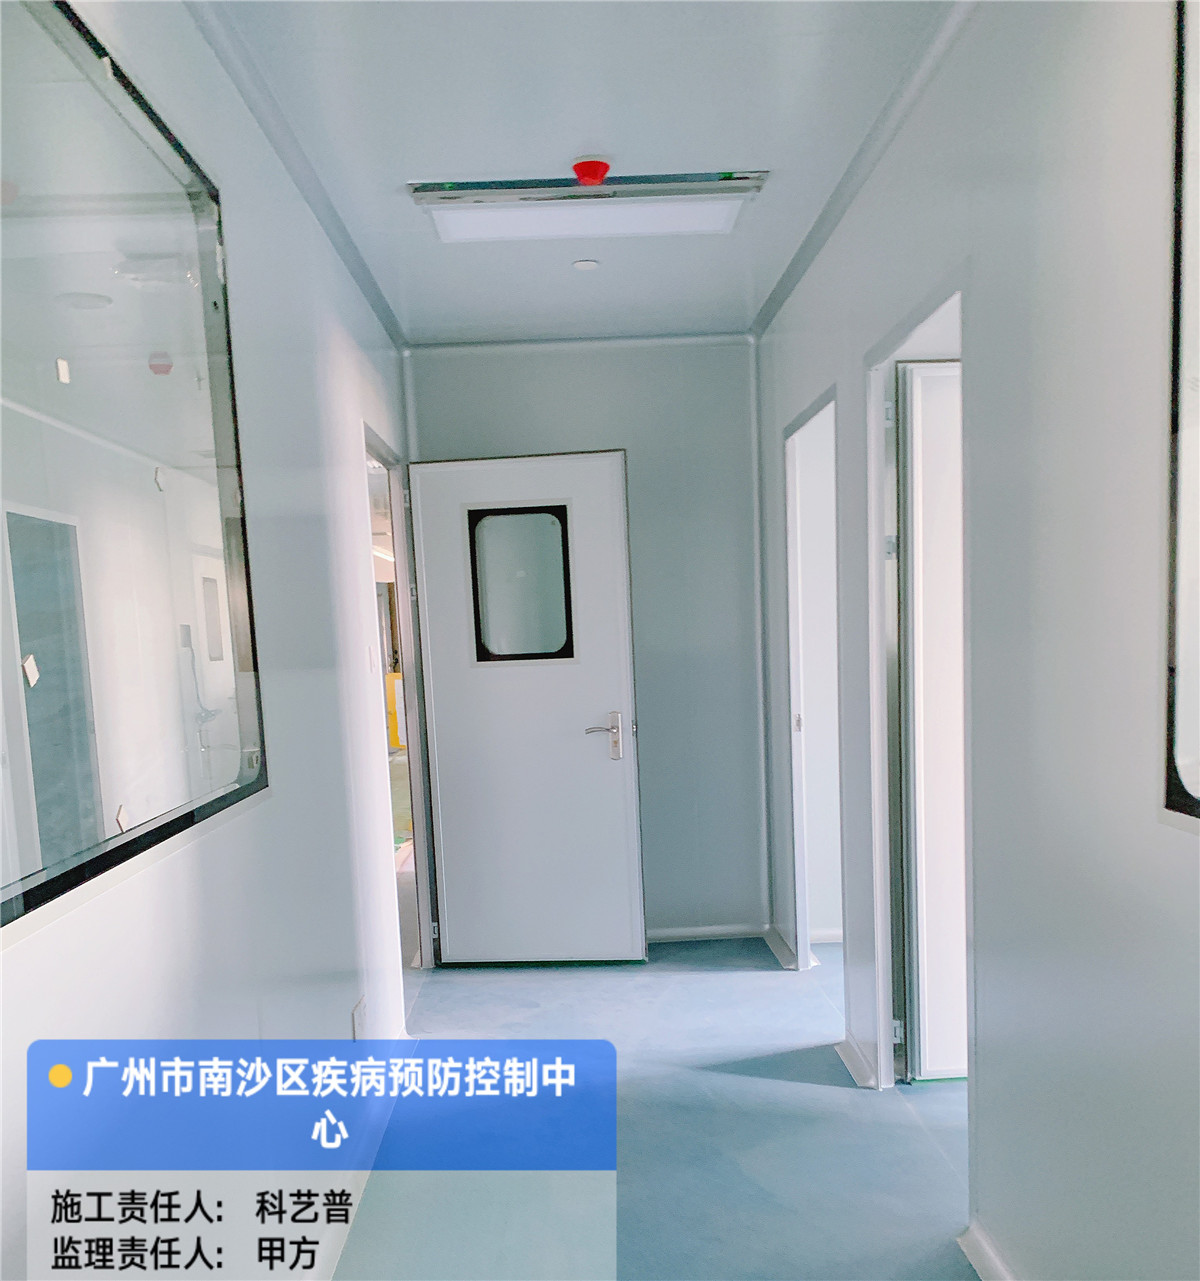 广州市南沙区疾病预防控制中心实验室工程